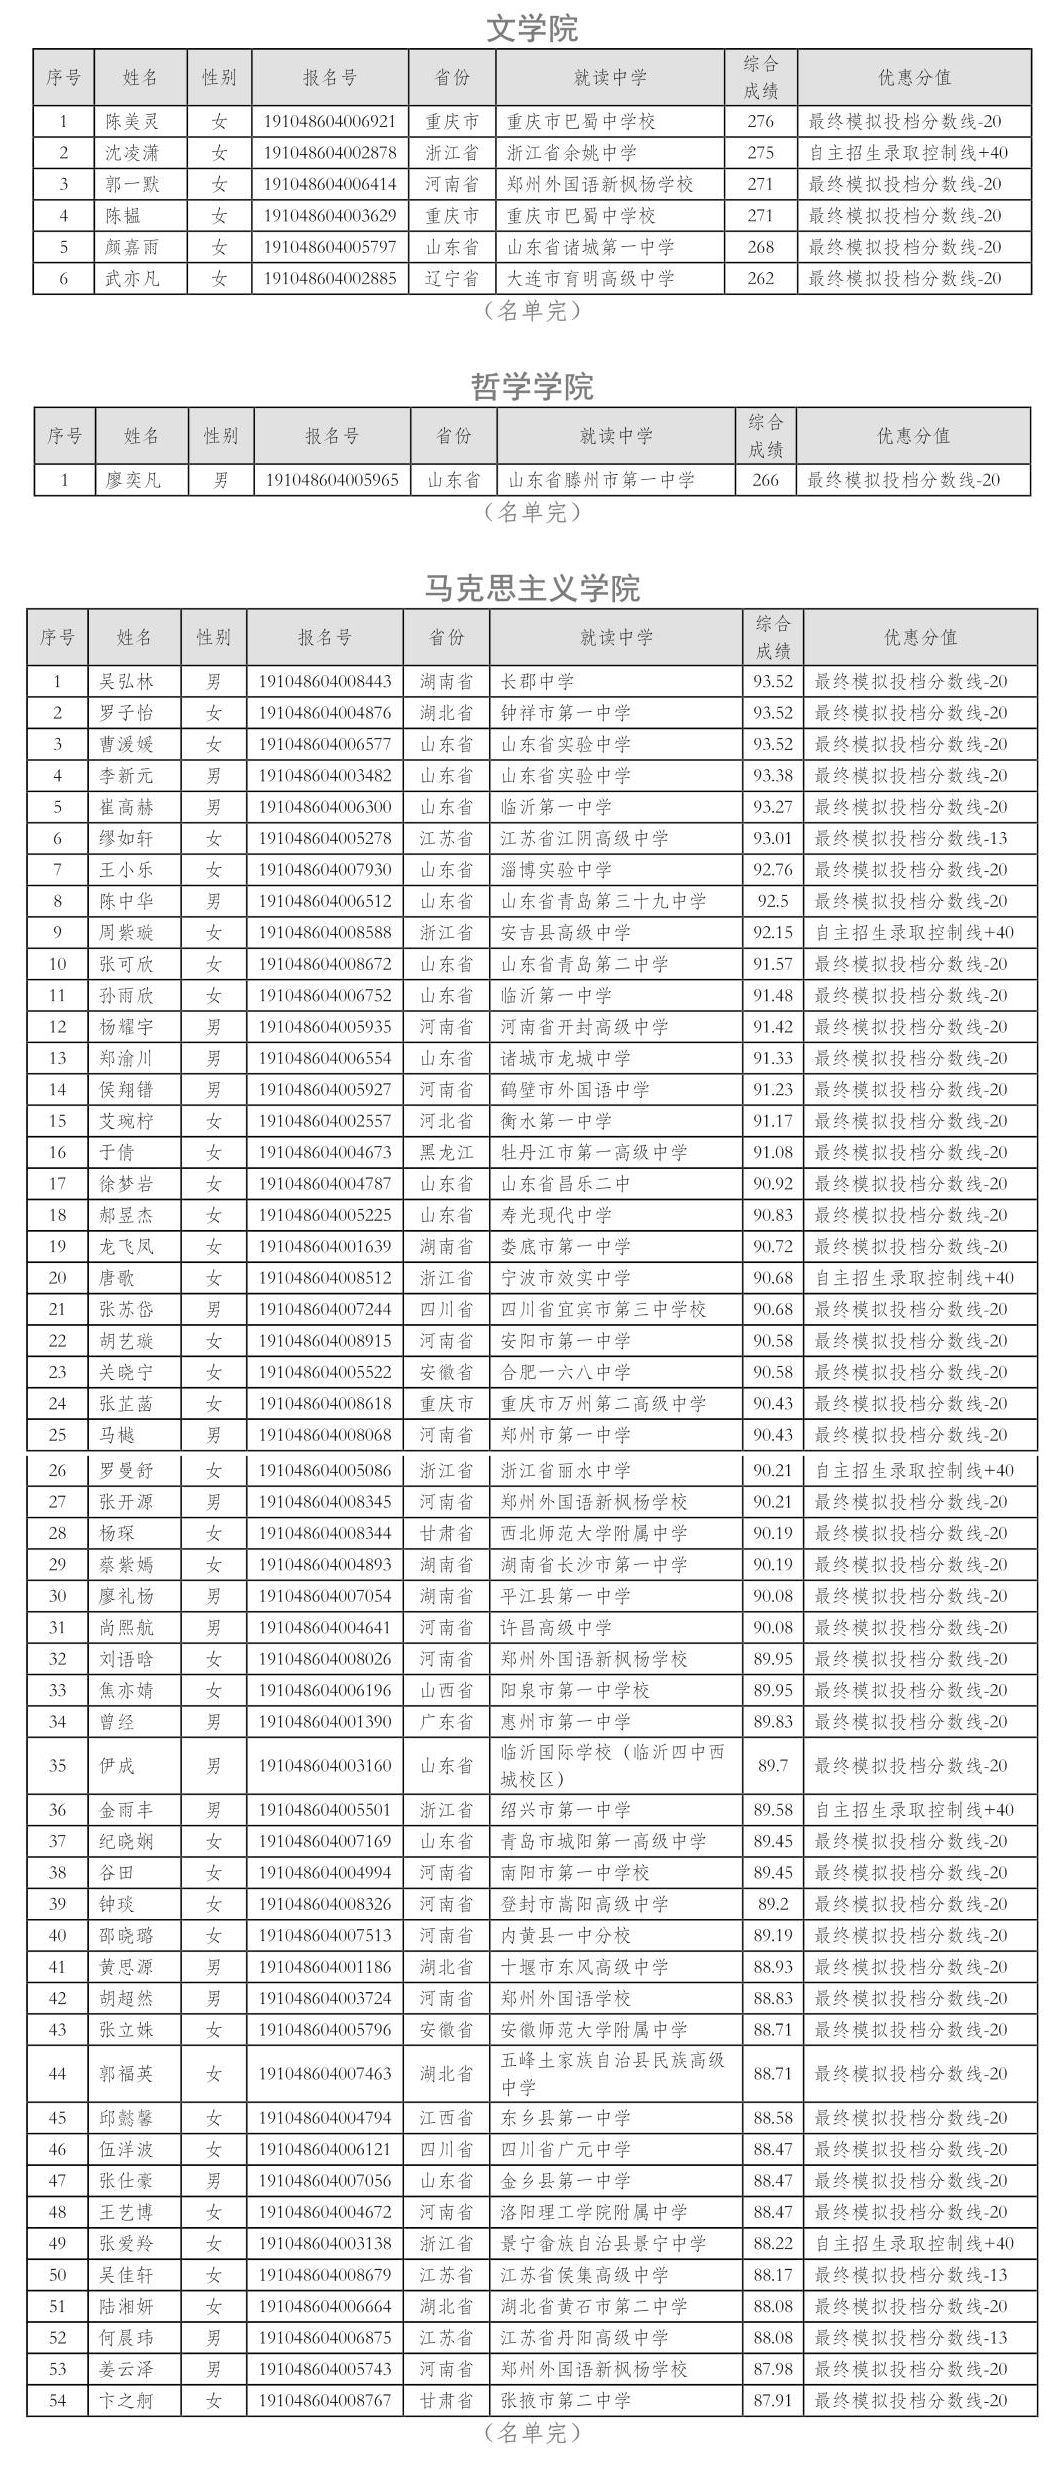 武汉大学2019年自主招生入选资格考生名单1